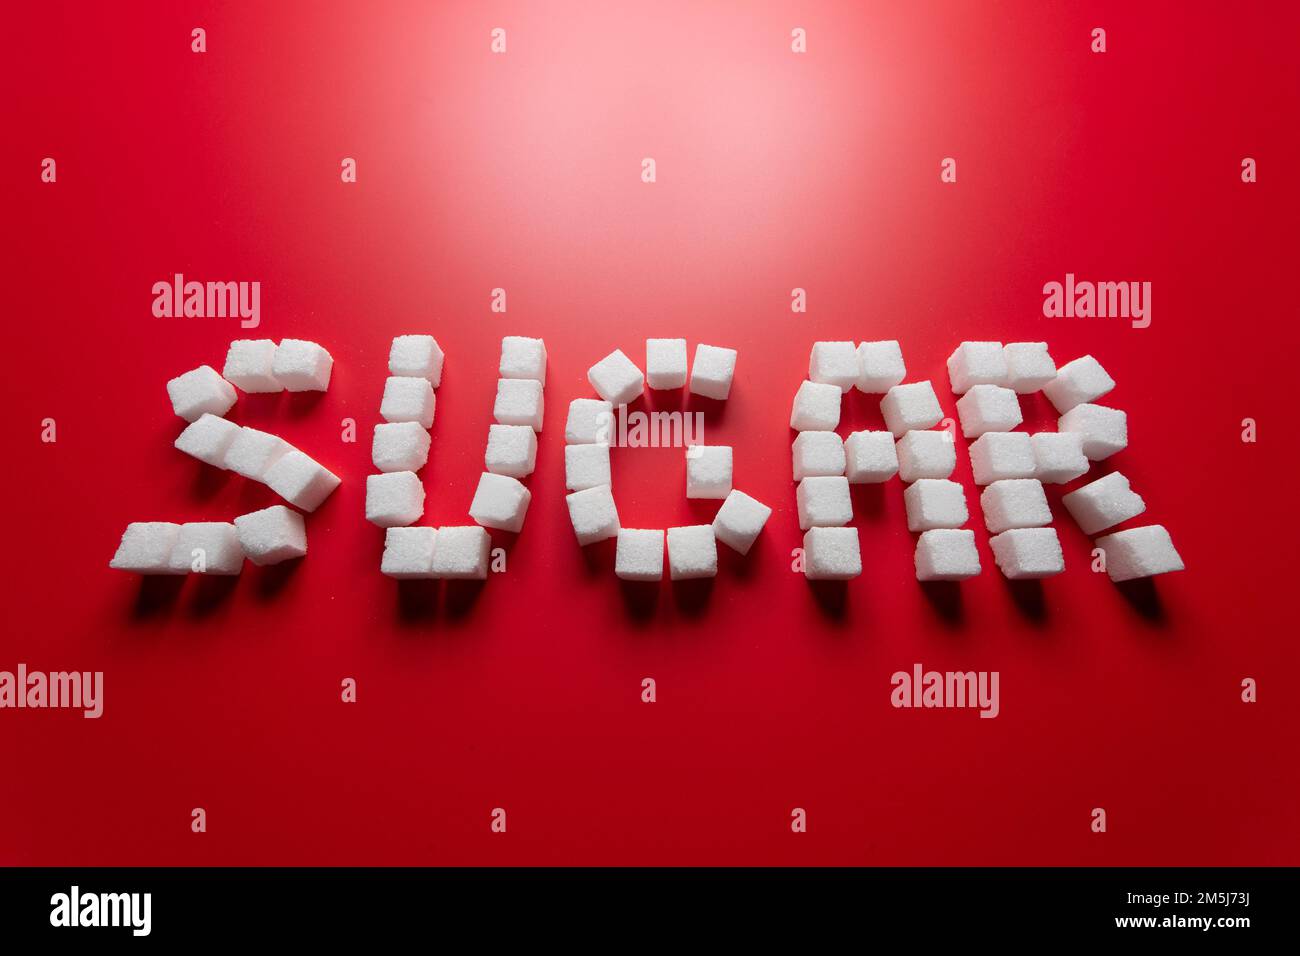 la parola zucchero è composta da cubetti di zucchero su sfondo rosso. foto sul tema dei pericoli del consumo di zucchero raffinato Foto Stock